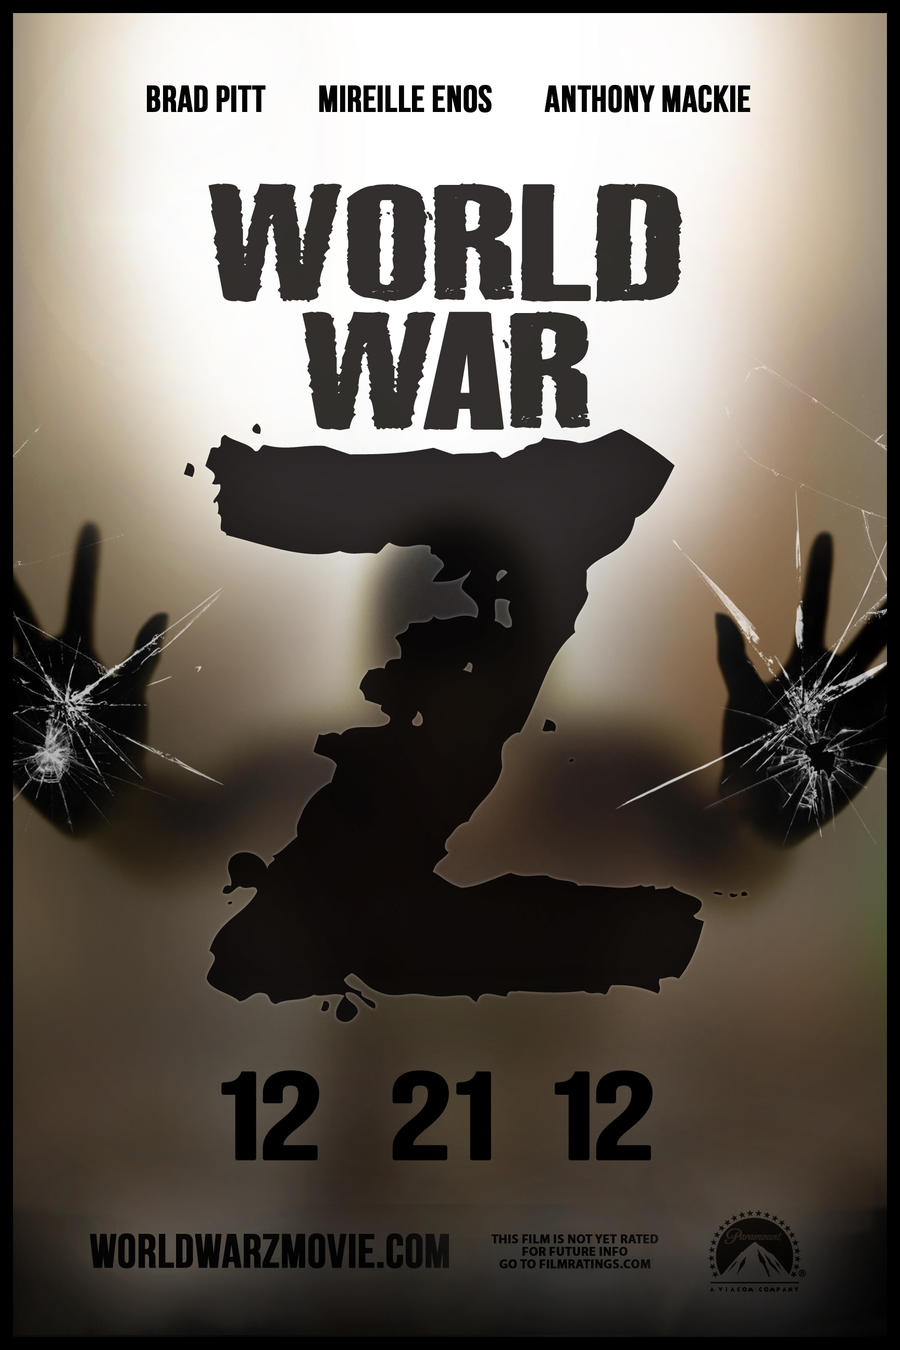 World War Z Movie Poster By Digitalmunkey On Deviantart